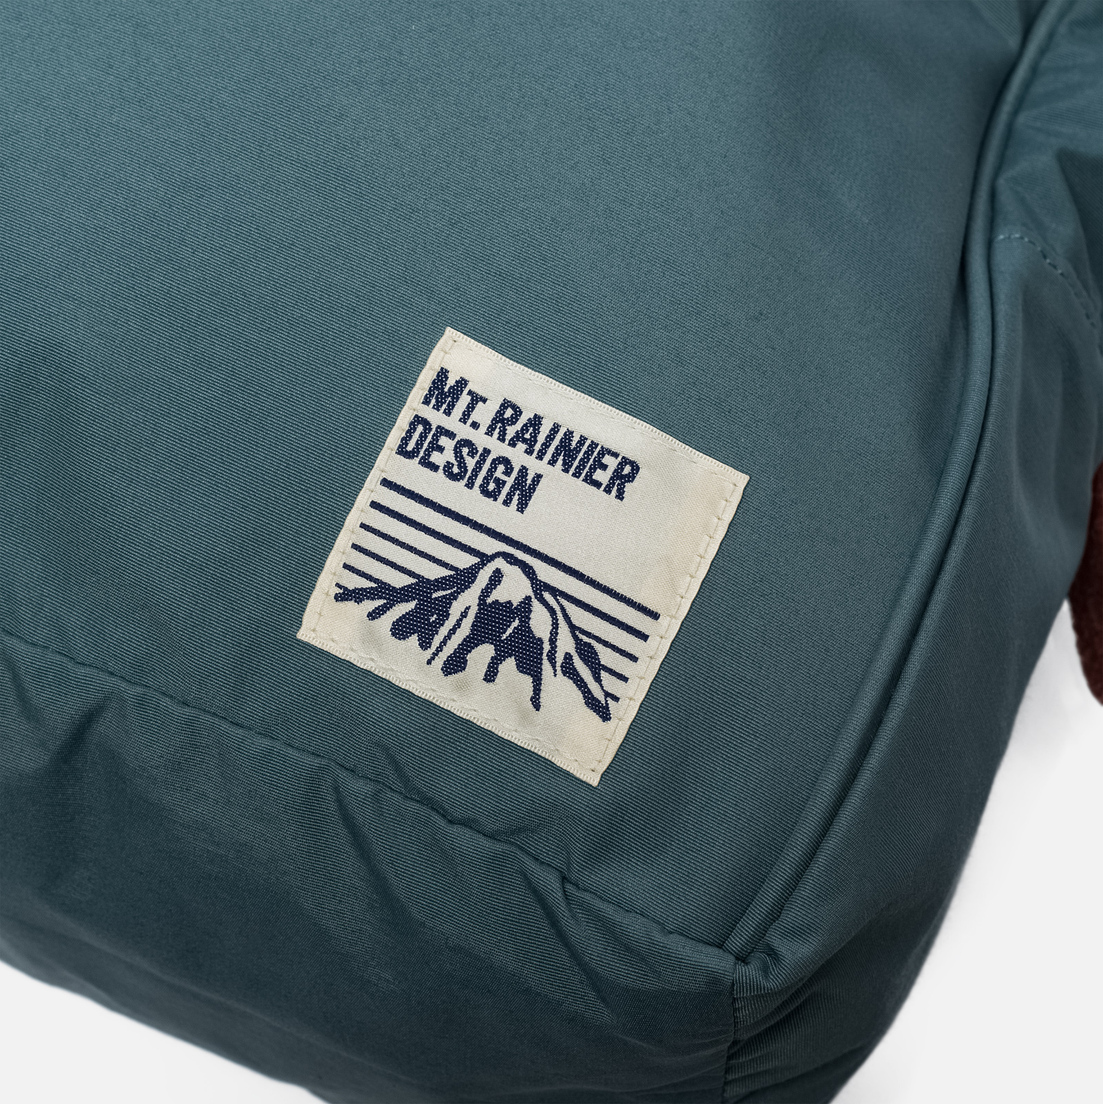 Mt. Rainier Design Рюкзак MR61349 Classic Handle Daypack